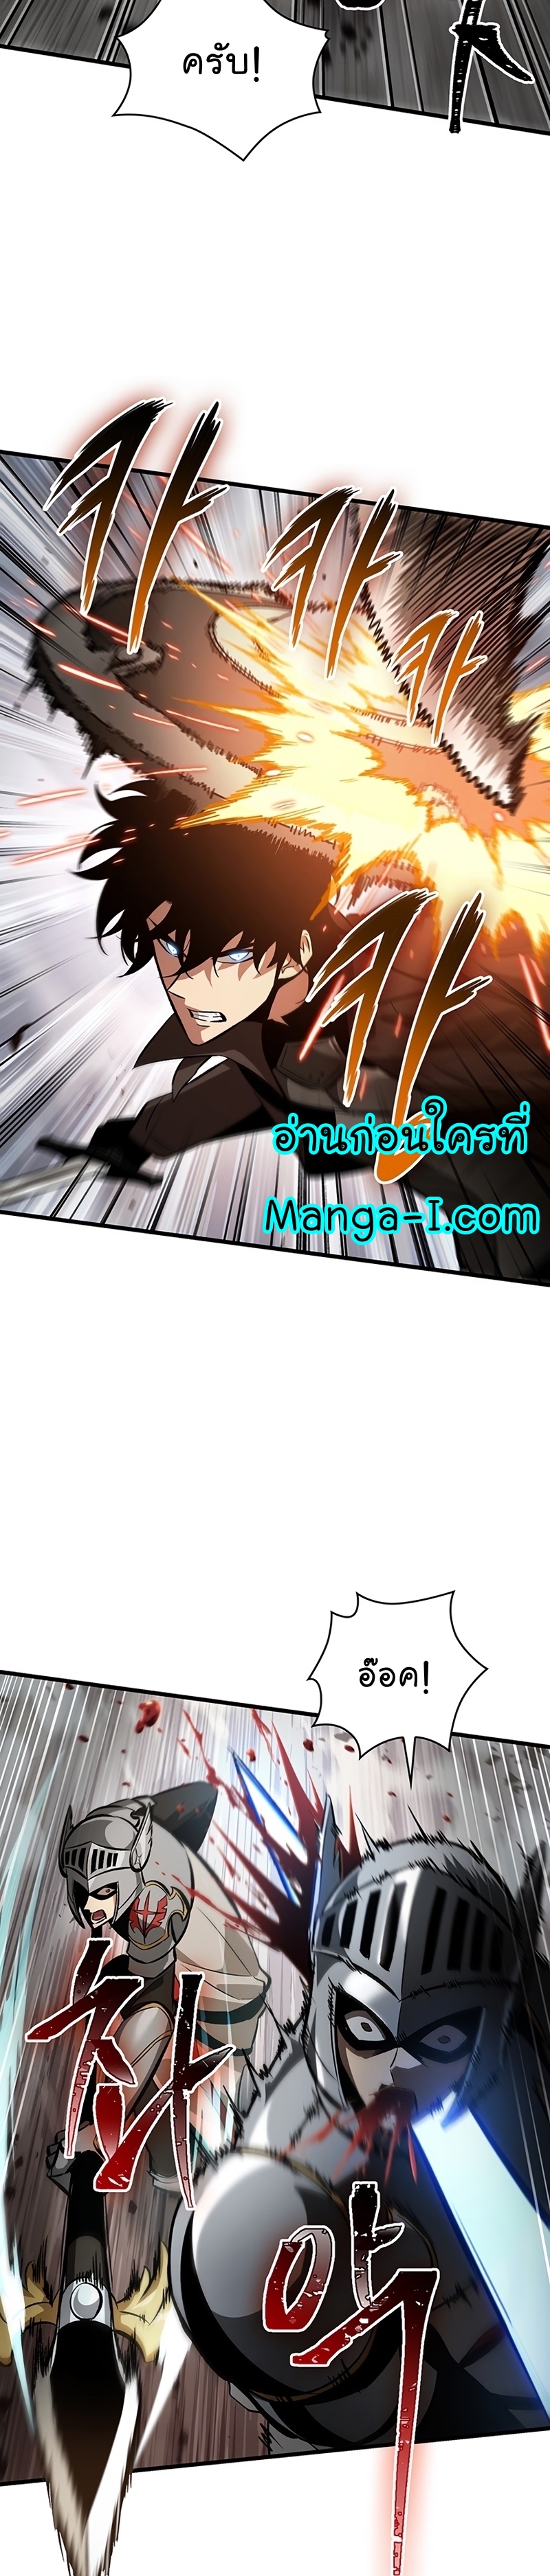 Manga I Manwha Pick Me 47 (31)